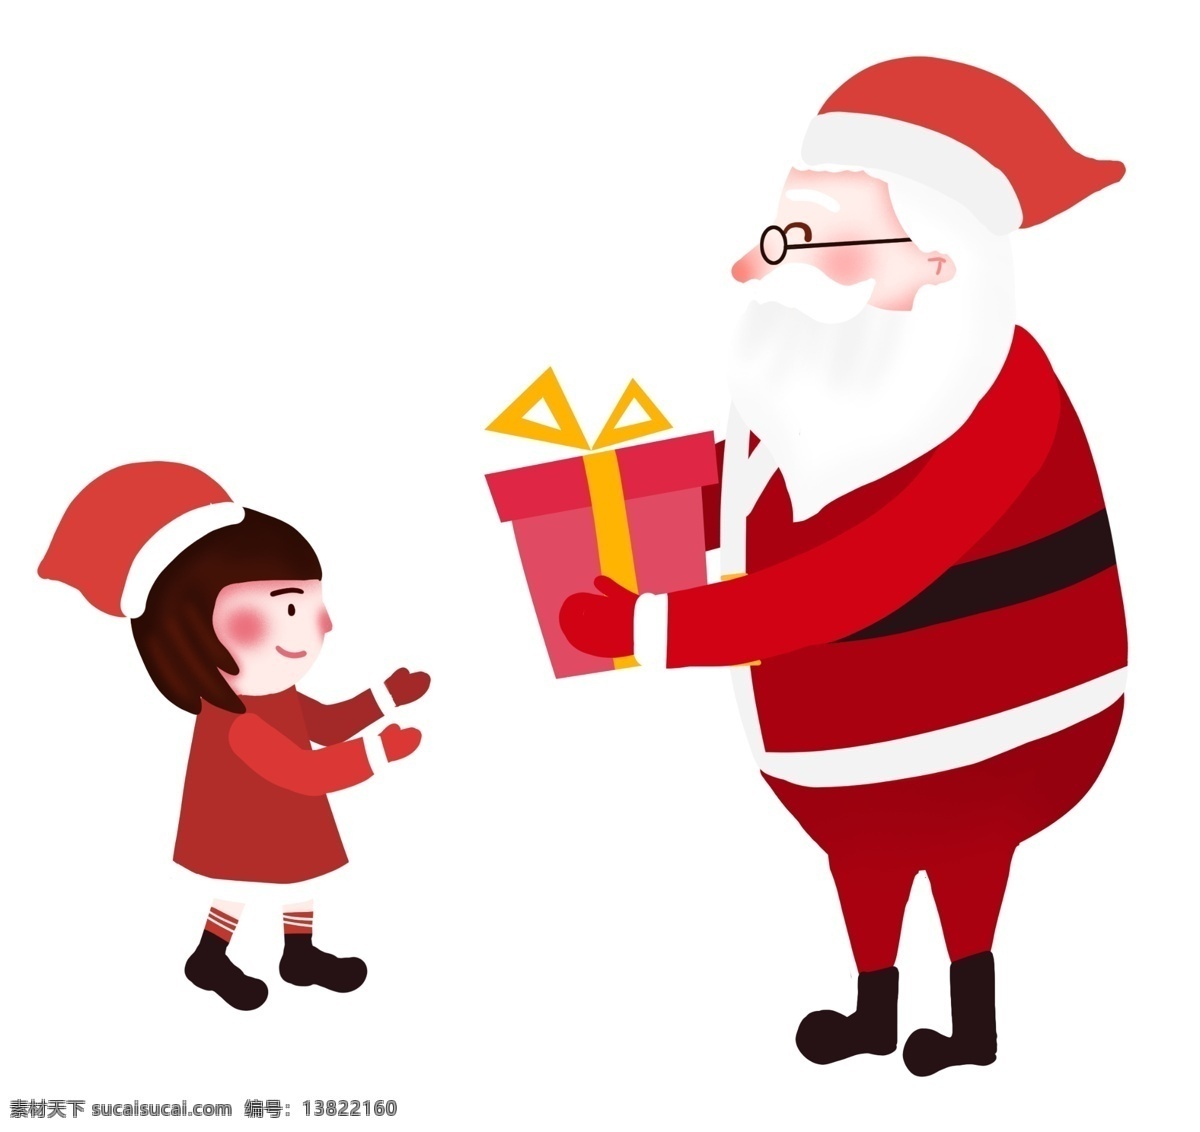 圣诞节 卡通 手绘 送礼 物 圣诞老人 小孩 礼品 礼物 圣诞老人送礼 圣诞节送礼物 穿 衣服 小女孩 可爱